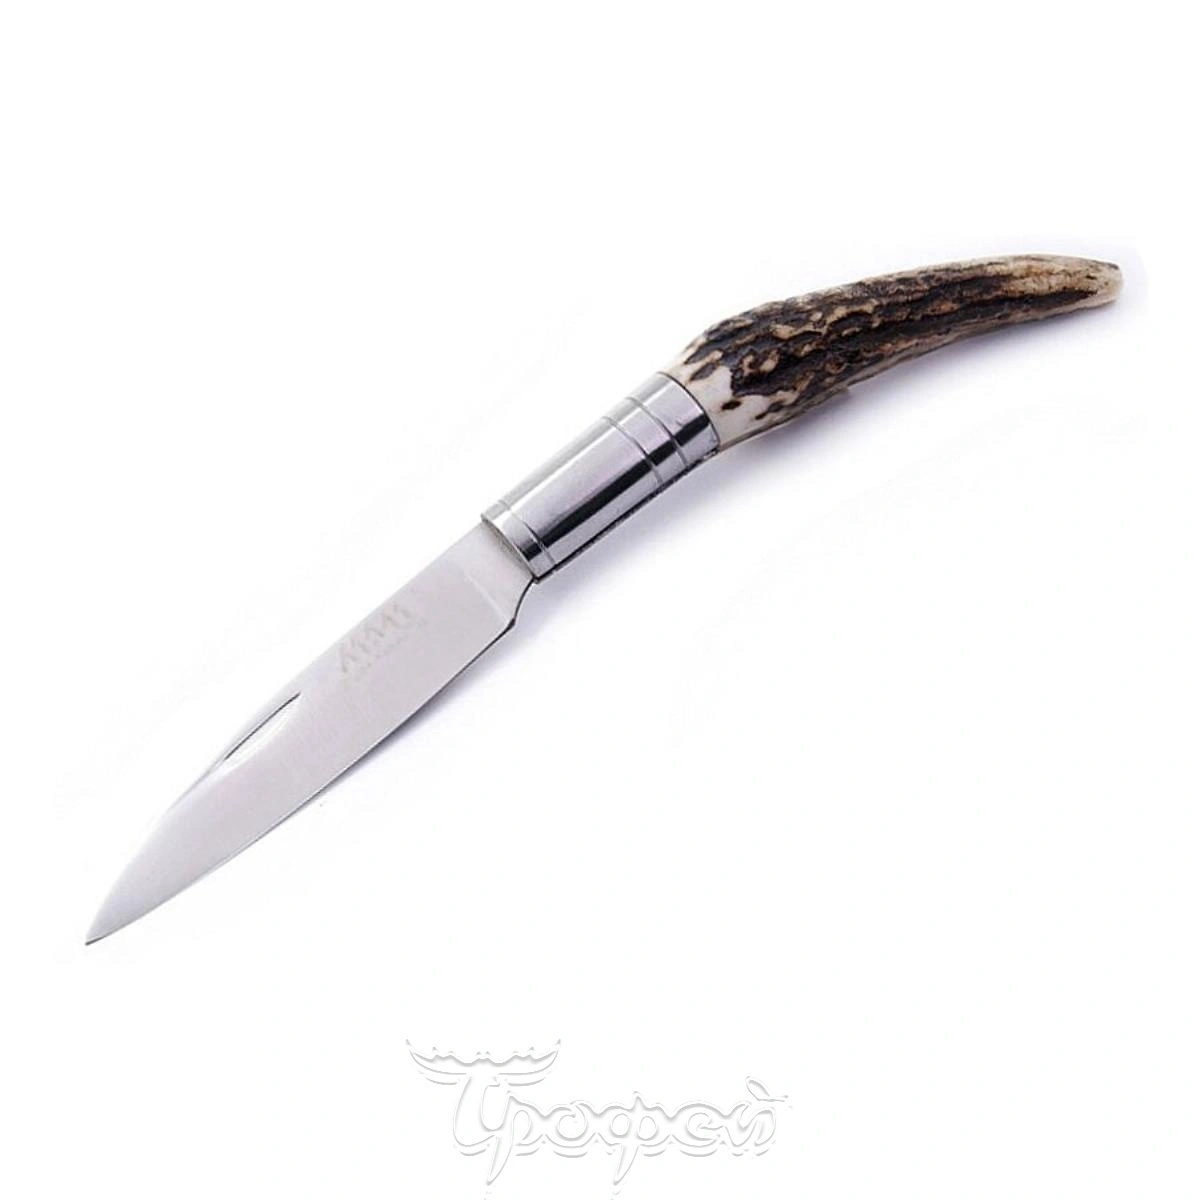 Ножи и инструменты: Fox карманный нож с ручкой из оленьего рога